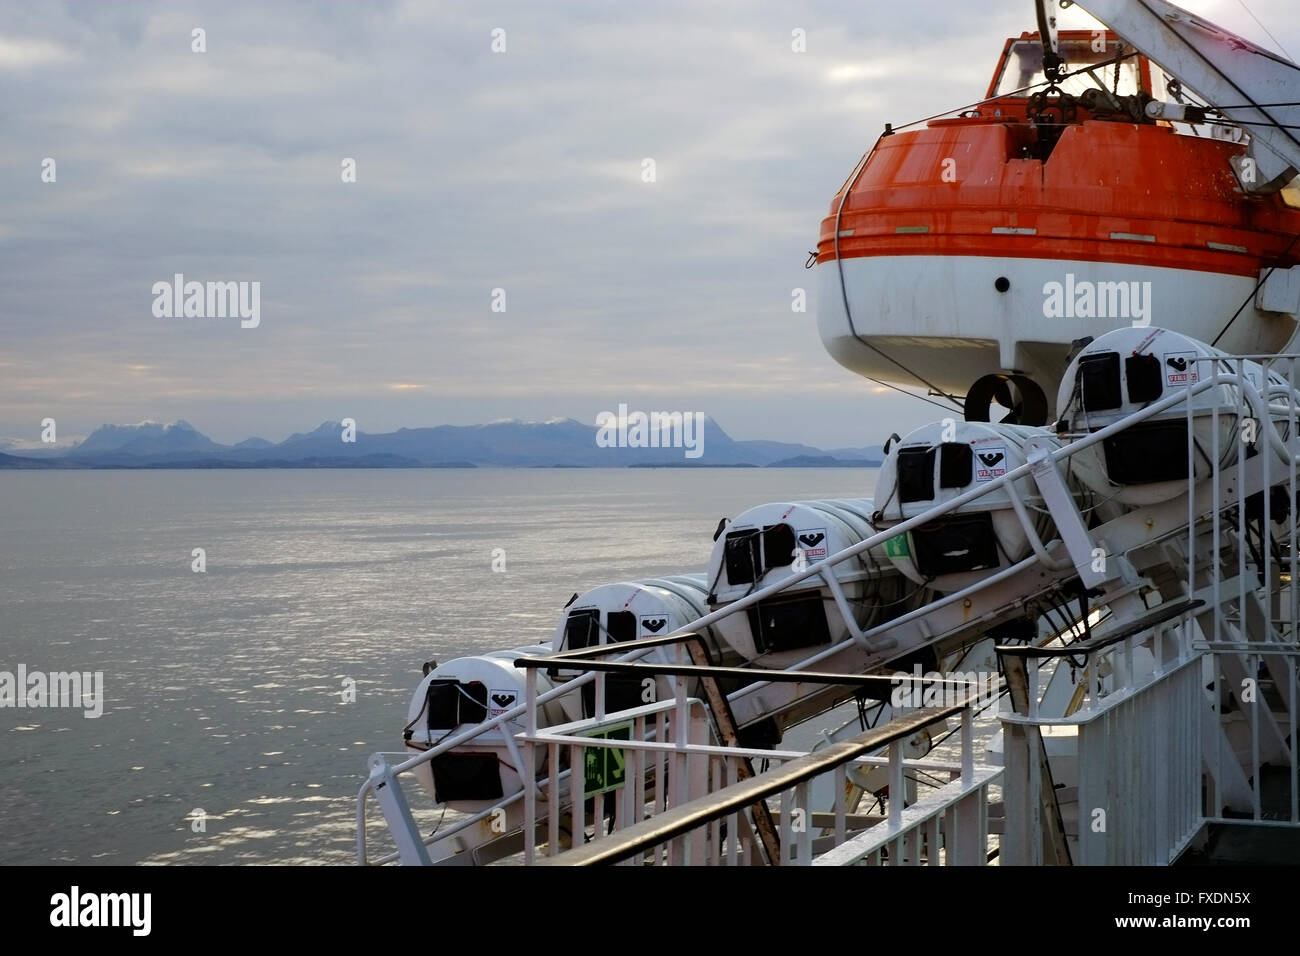 Lifeboat on davits, on the 'MV Isle of Lewis' ferry boat off the northwest coast of Scotland, UK. Stock Photo